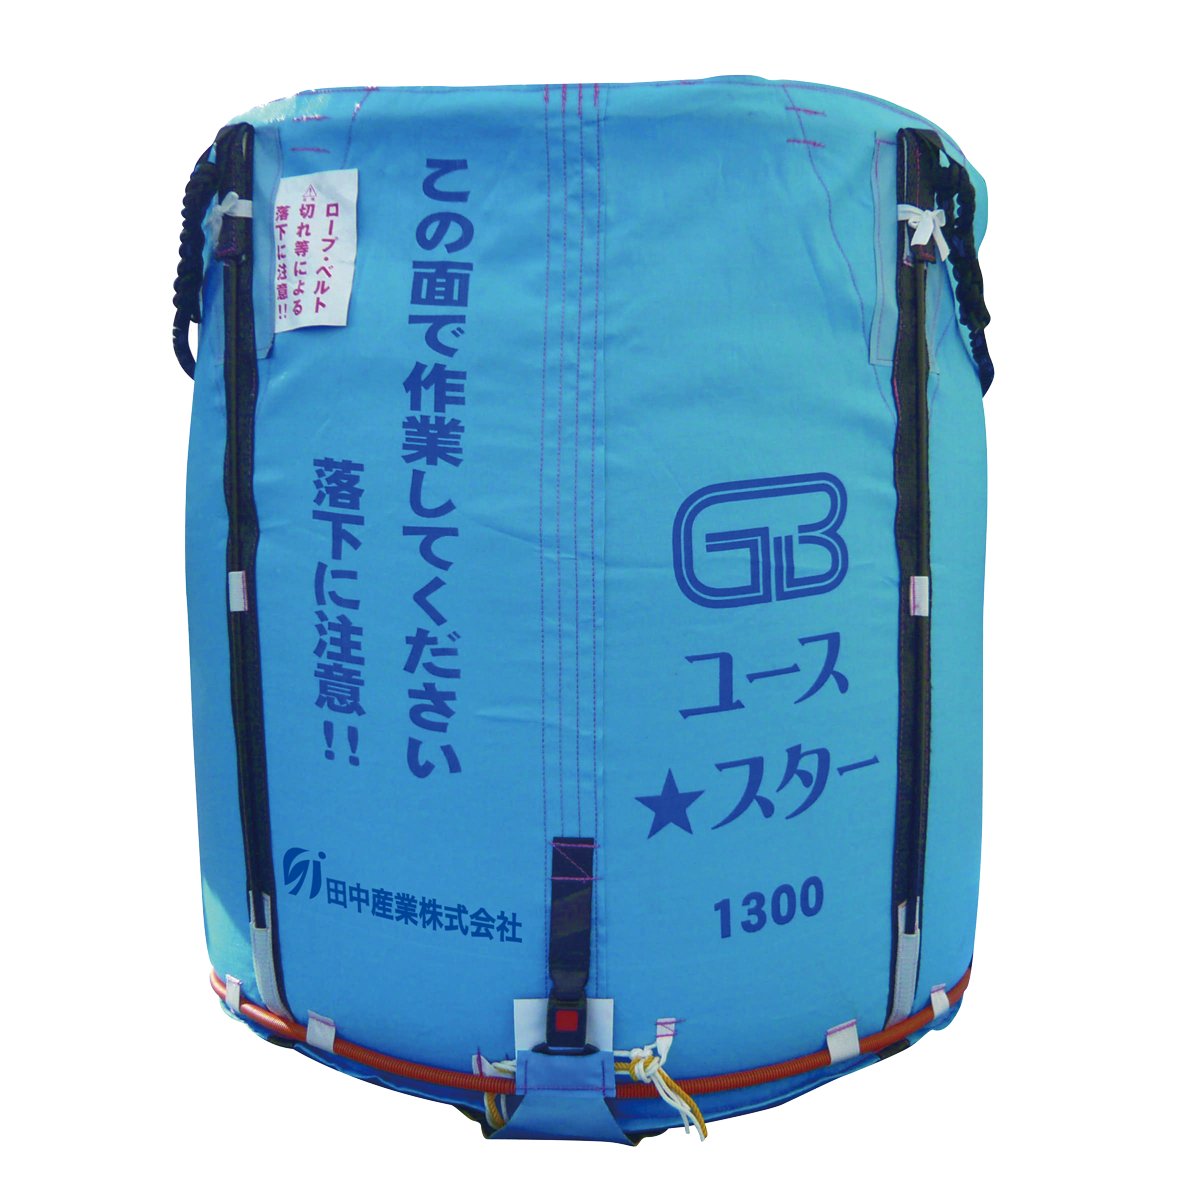 田中産業 グレンバッグ カバチャン5枚組 800L 一般乾燥機用 - 1